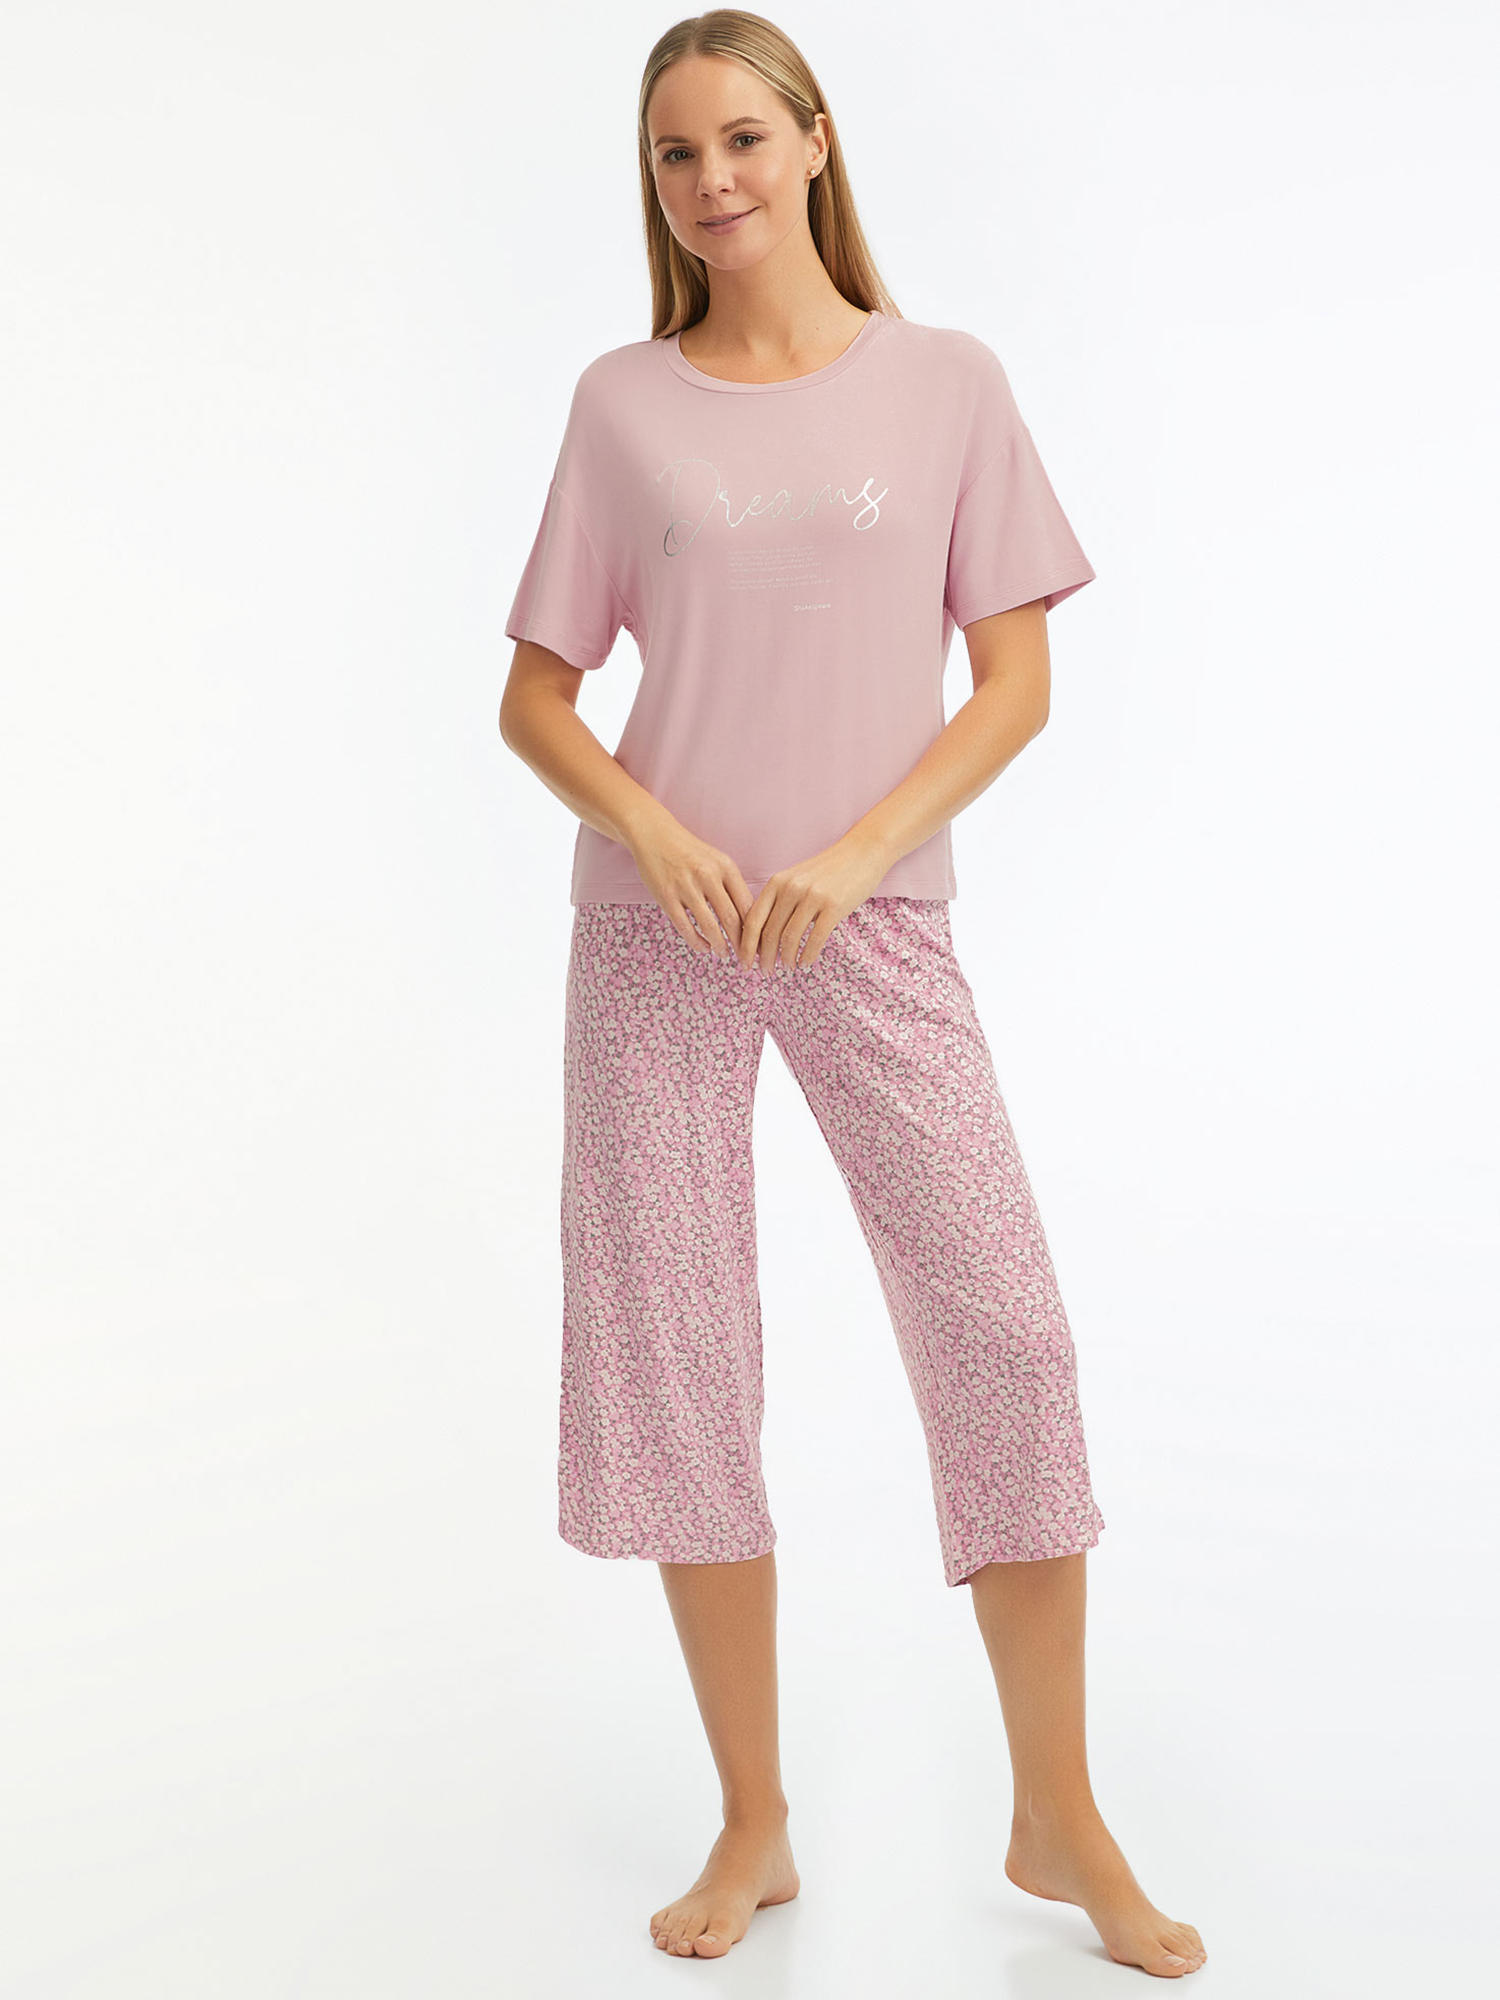 Пижама женская oodji 56002248-1 розовая XS